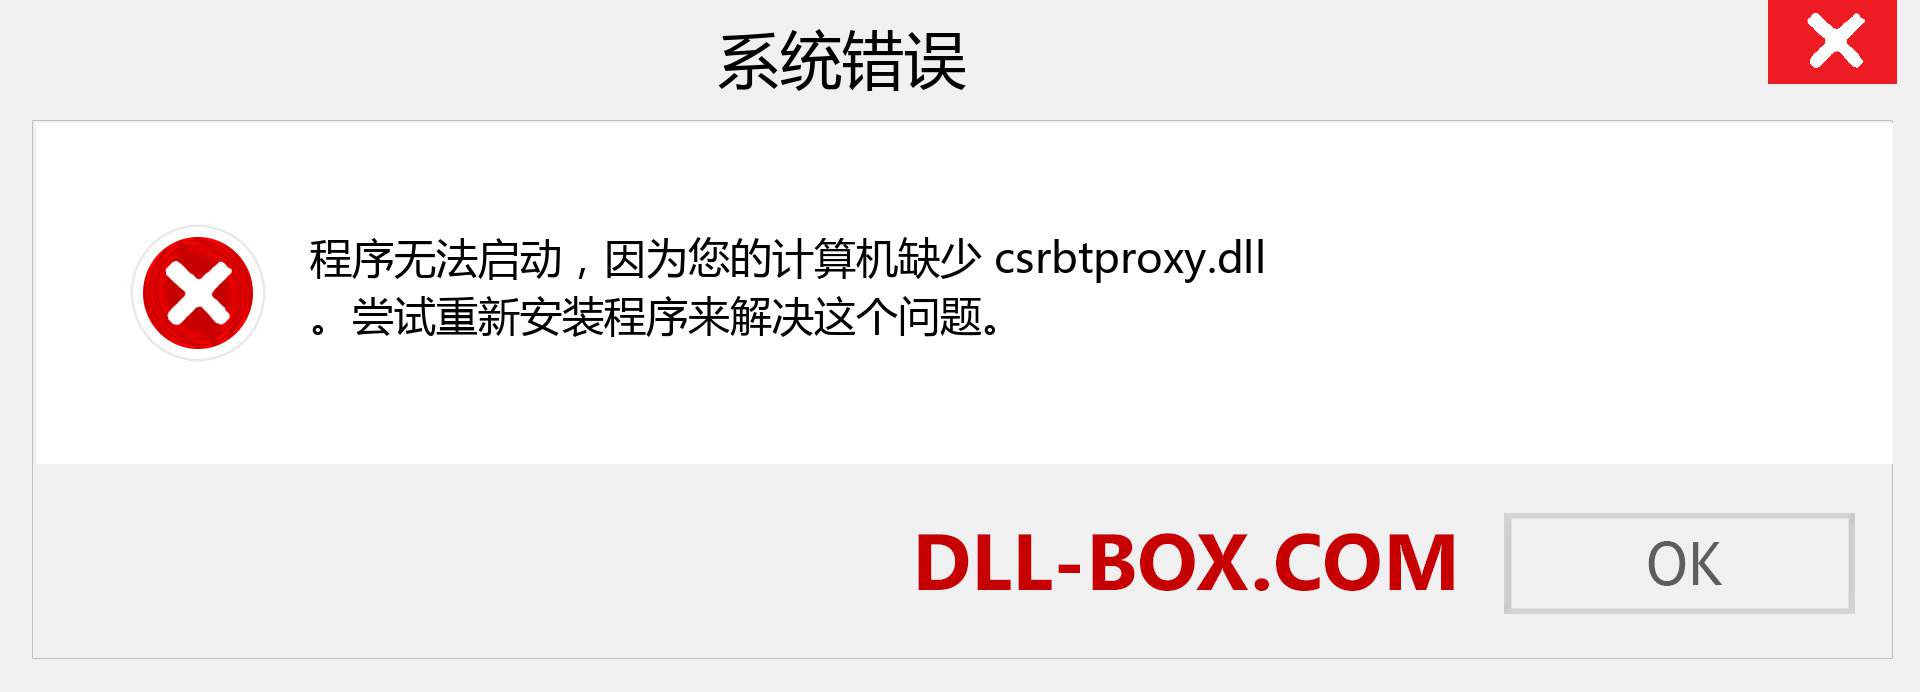 csrbtproxy.dll 文件丢失？。 适用于 Windows 7、8、10 的下载 - 修复 Windows、照片、图像上的 csrbtproxy dll 丢失错误